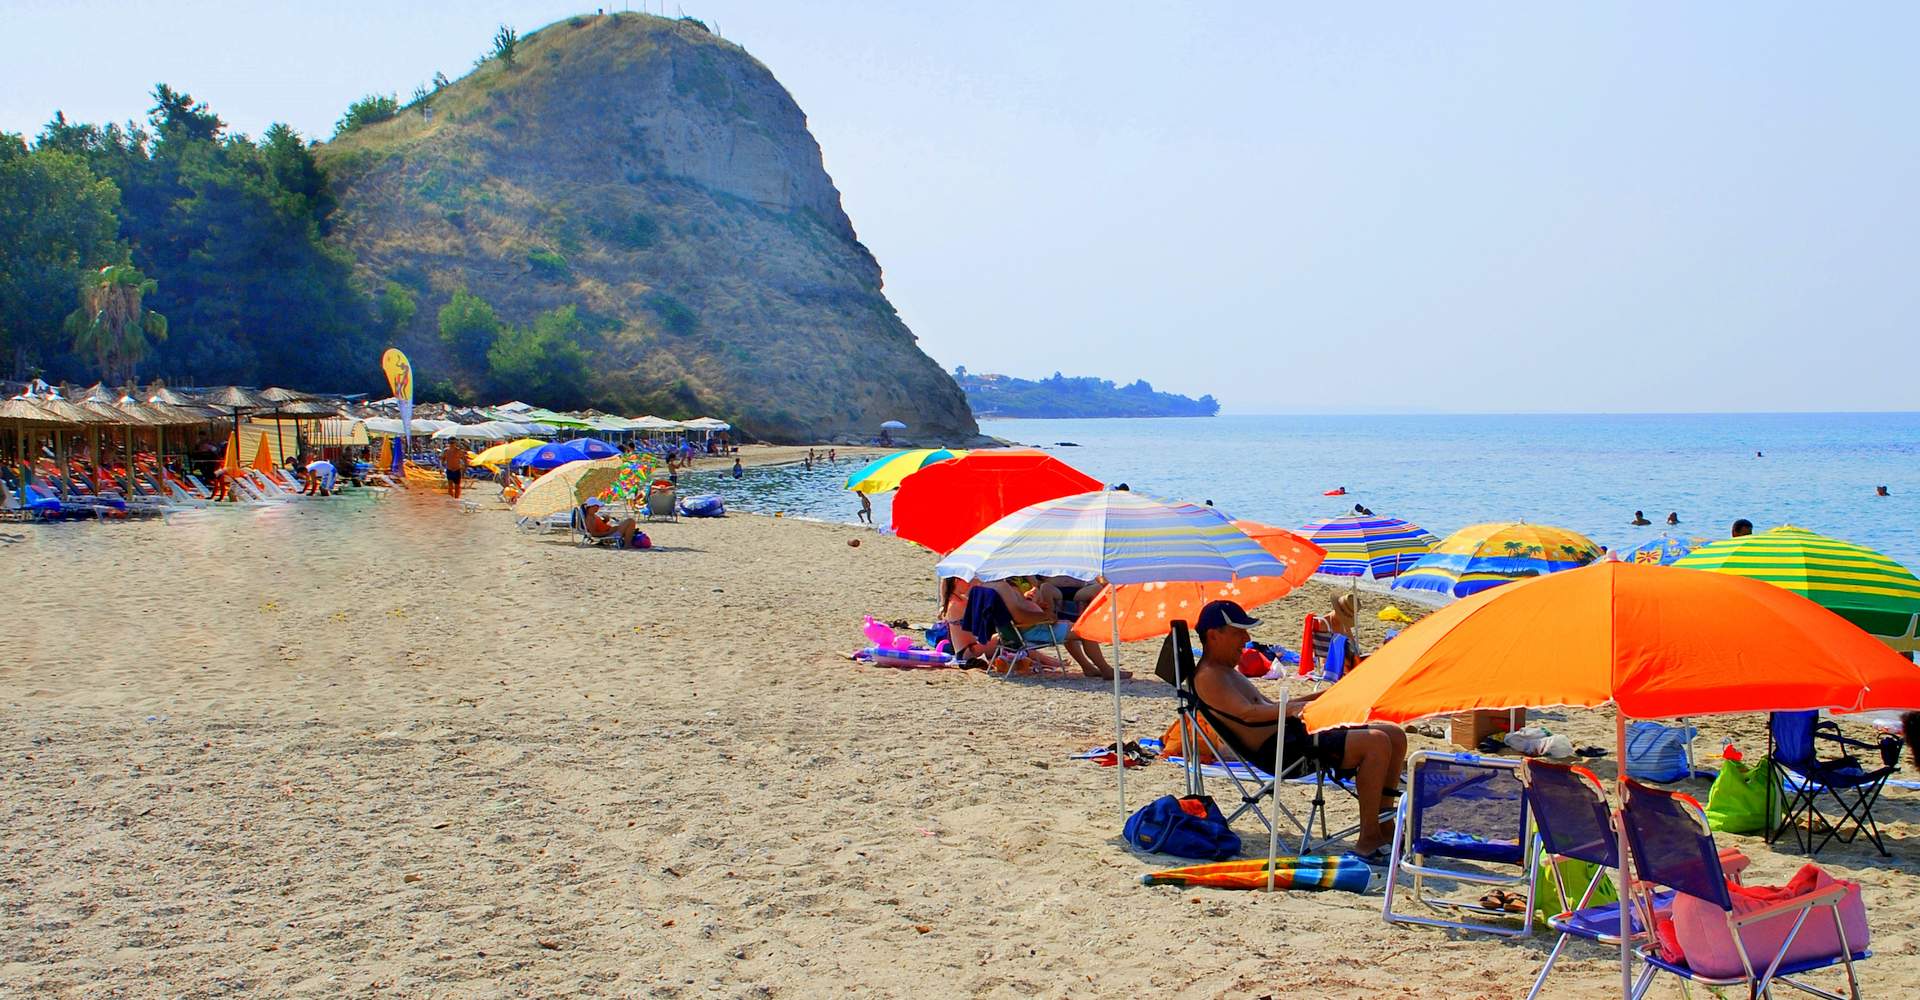 Vergia beach, Halkidiki, Greece